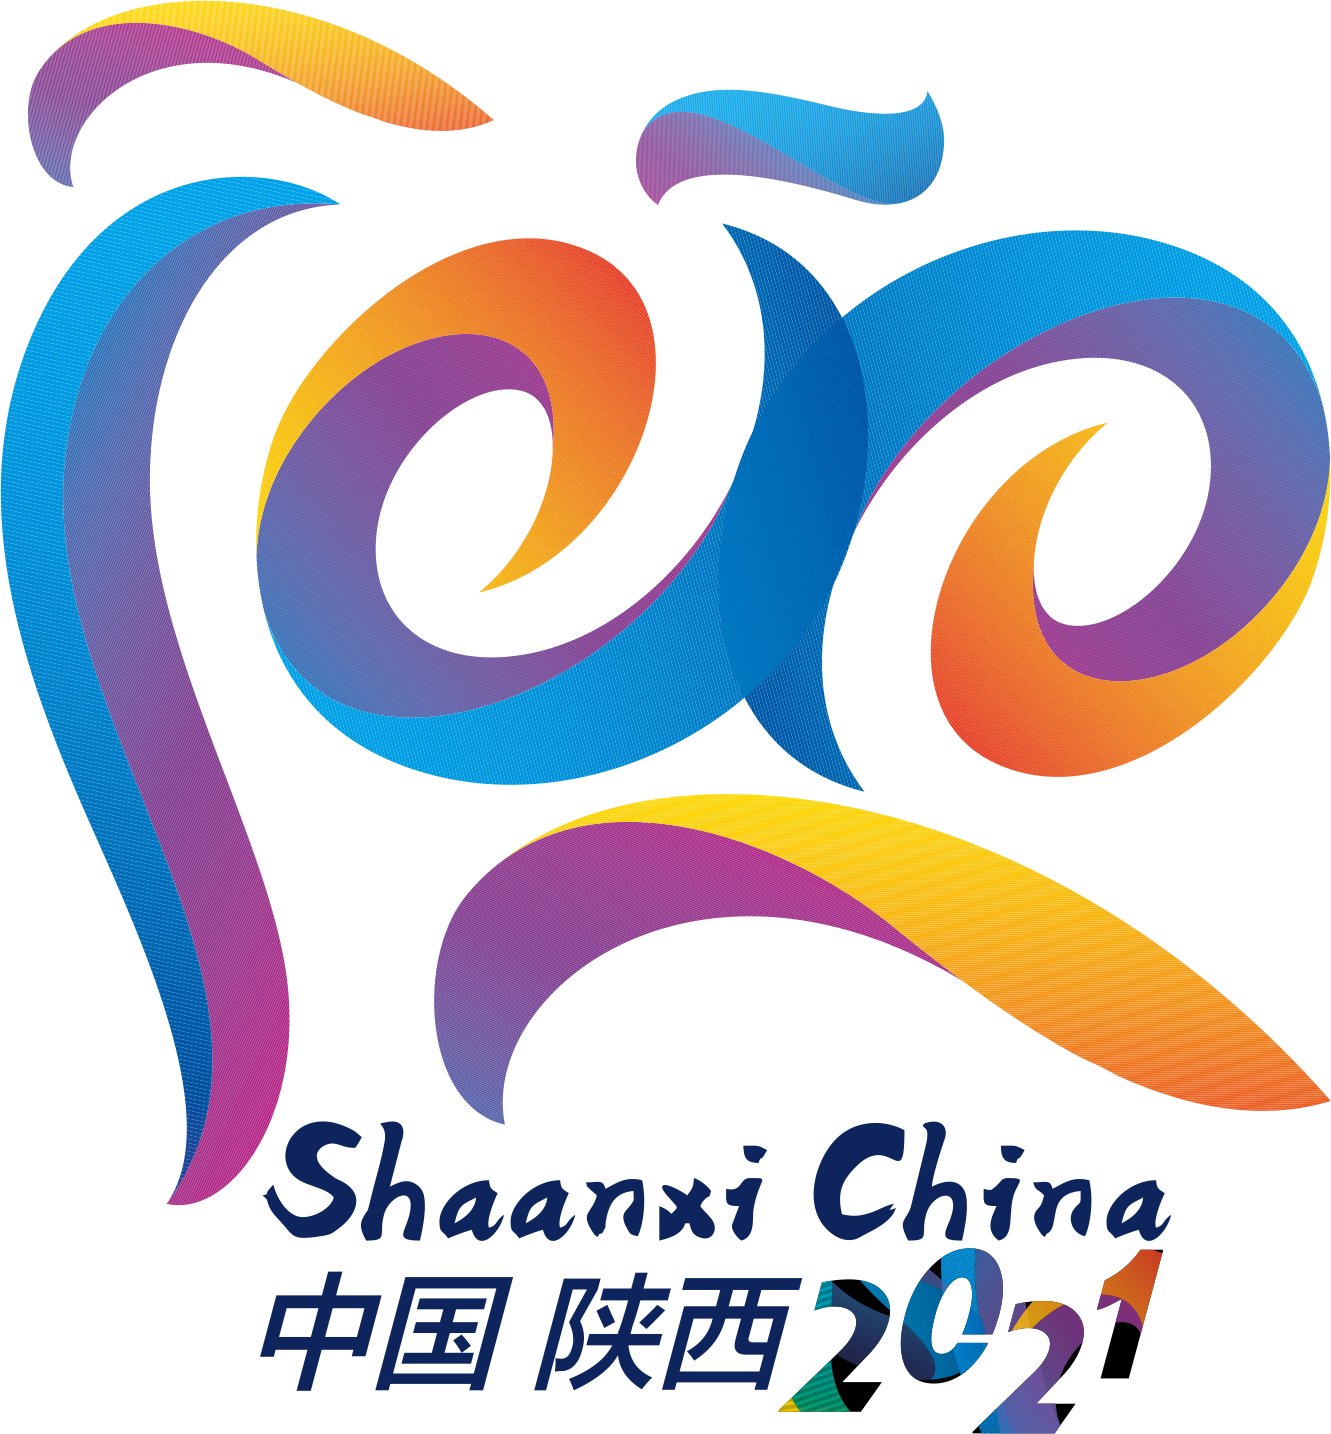 第十四届全运会徽标图片